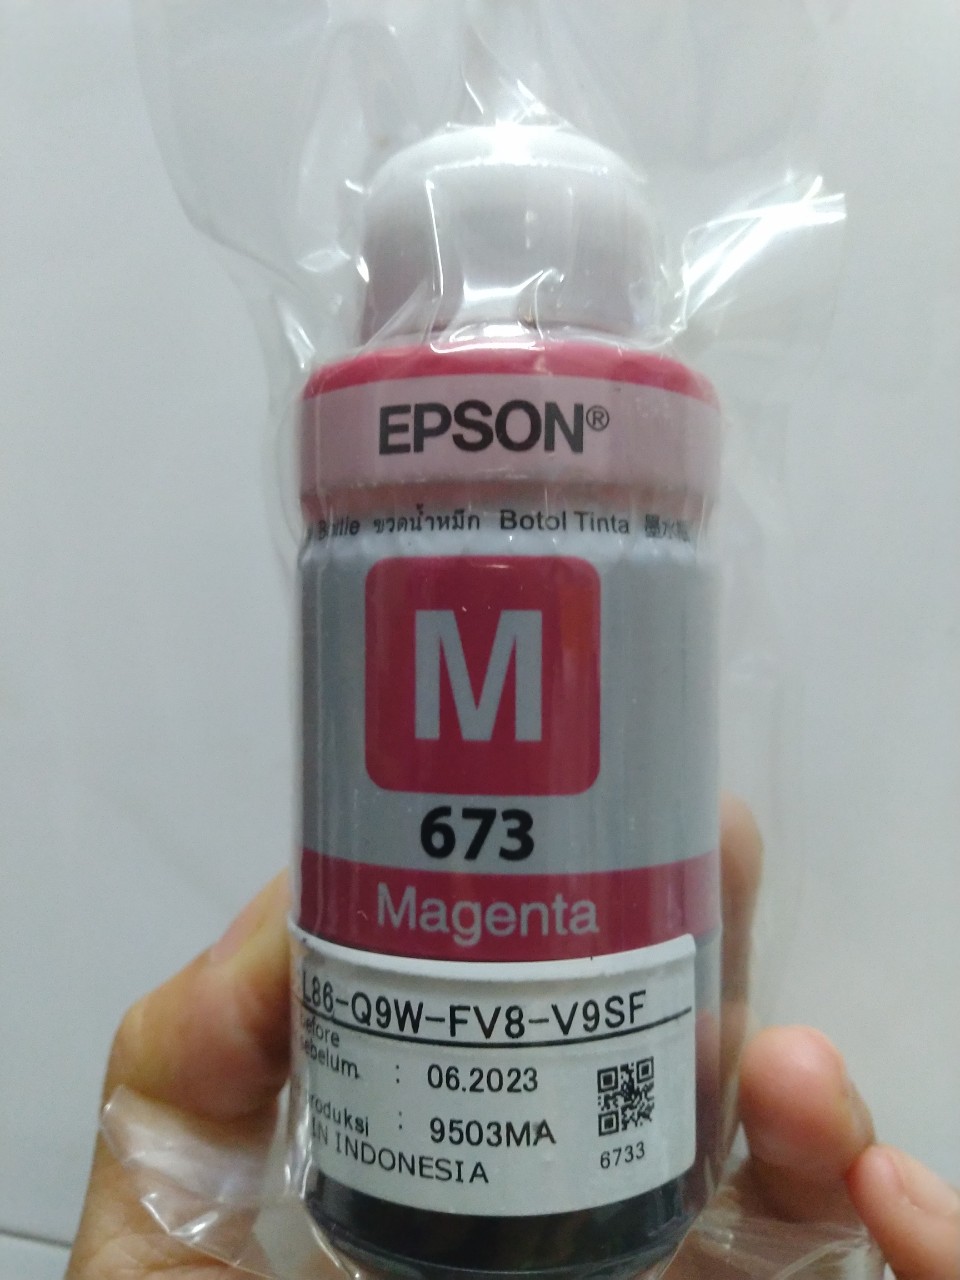 Mực Epson 673 màu đỏ dành cho máy Epson L805 / L850 / L1800 / L810 / L800